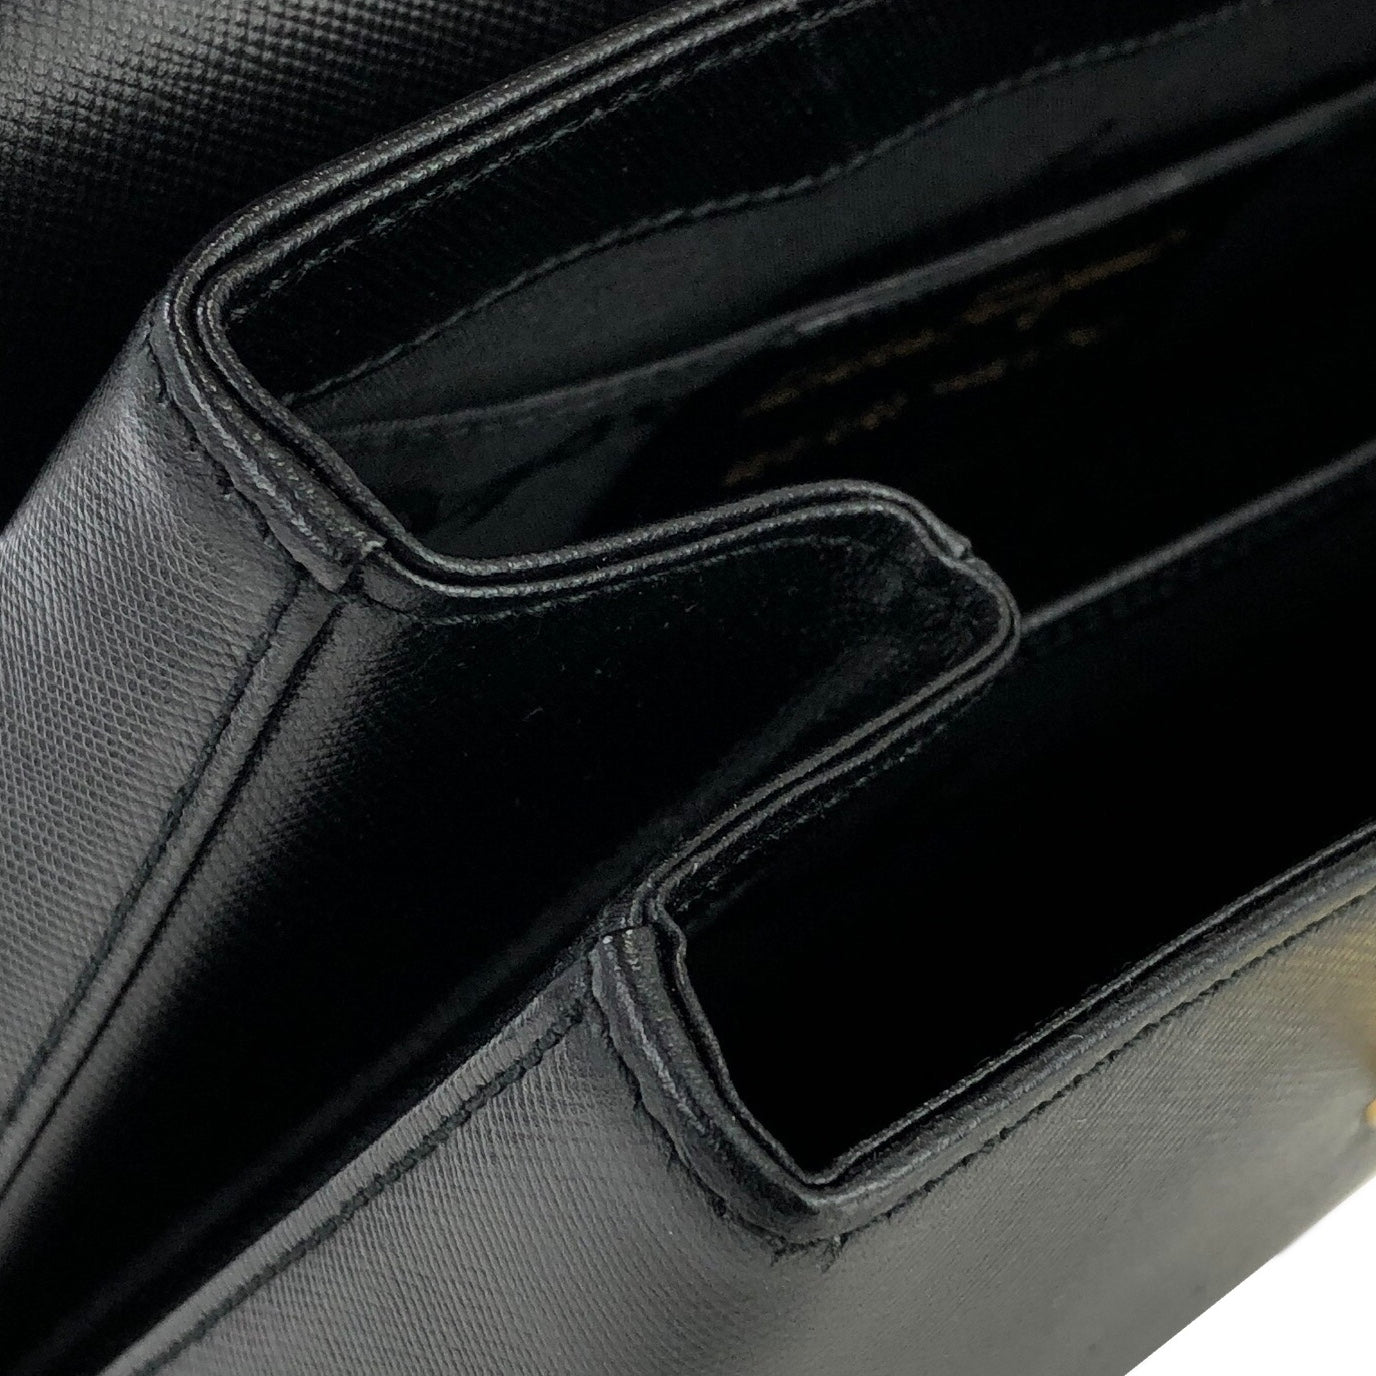 Salvatore Ferragamo Gancini Embossed leather 2way Shoulder bag Bandbag Black Vintage Old jbv5dw